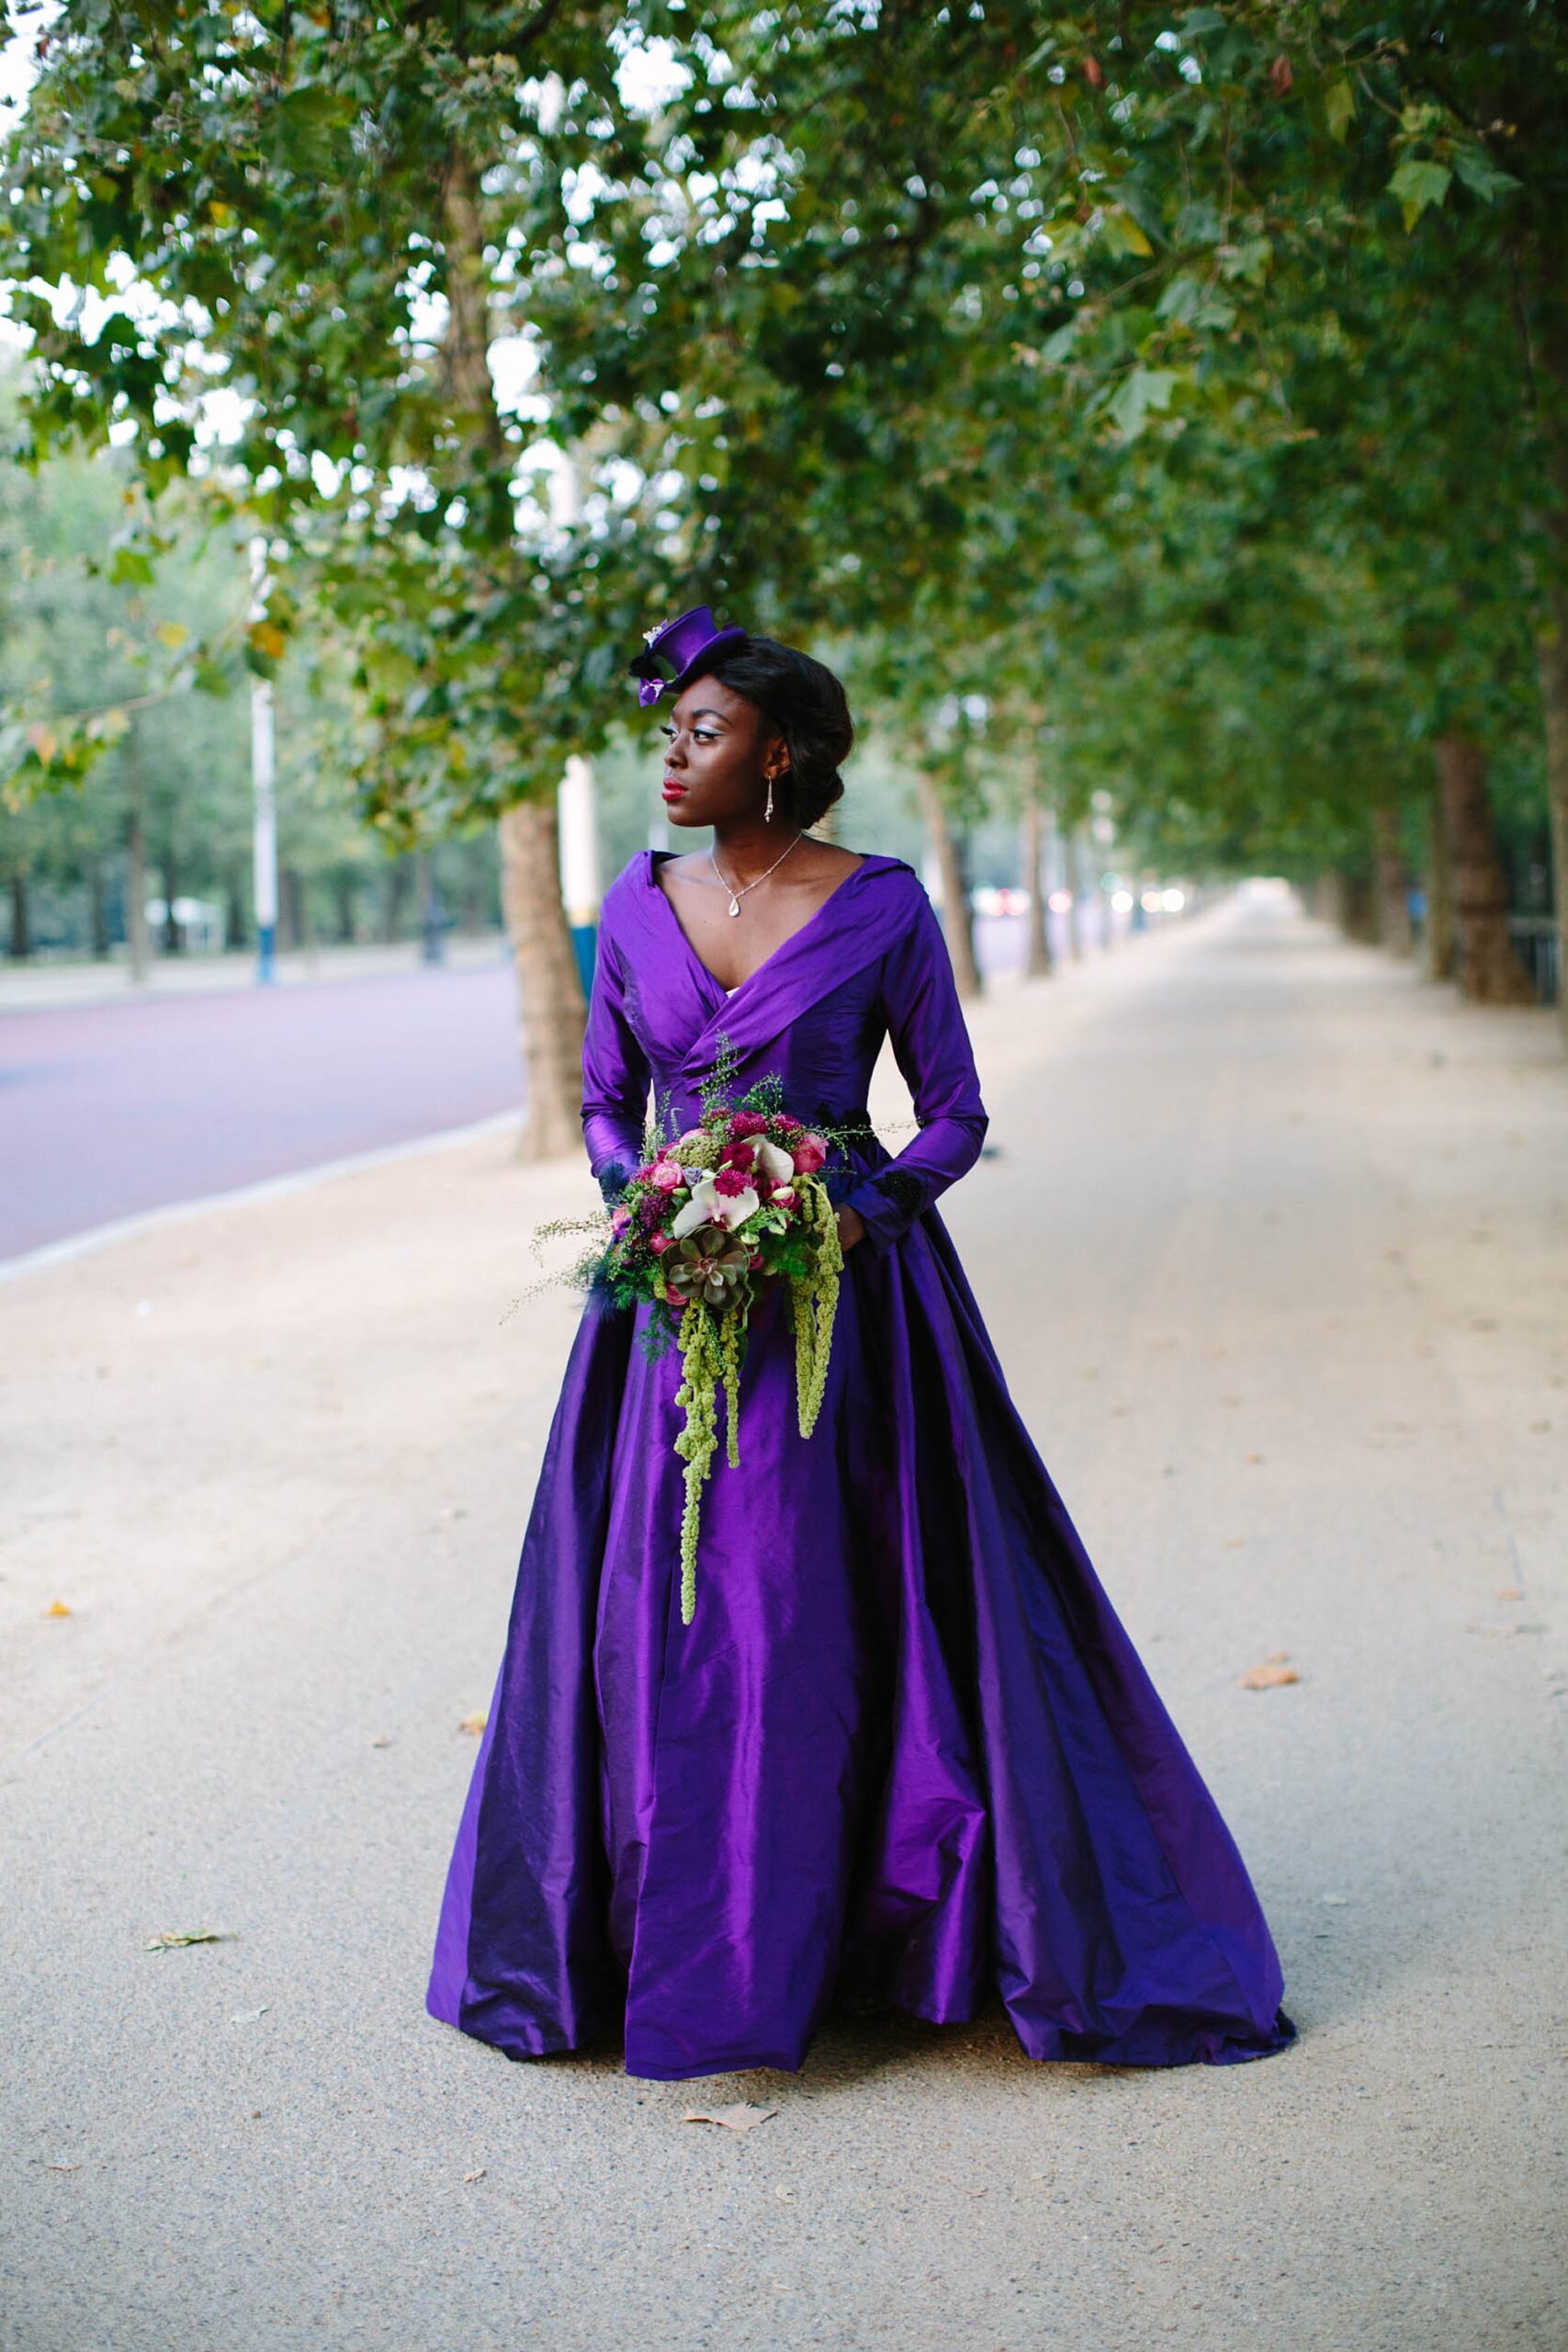 bespoke wedding dress by Felicity Westmacott